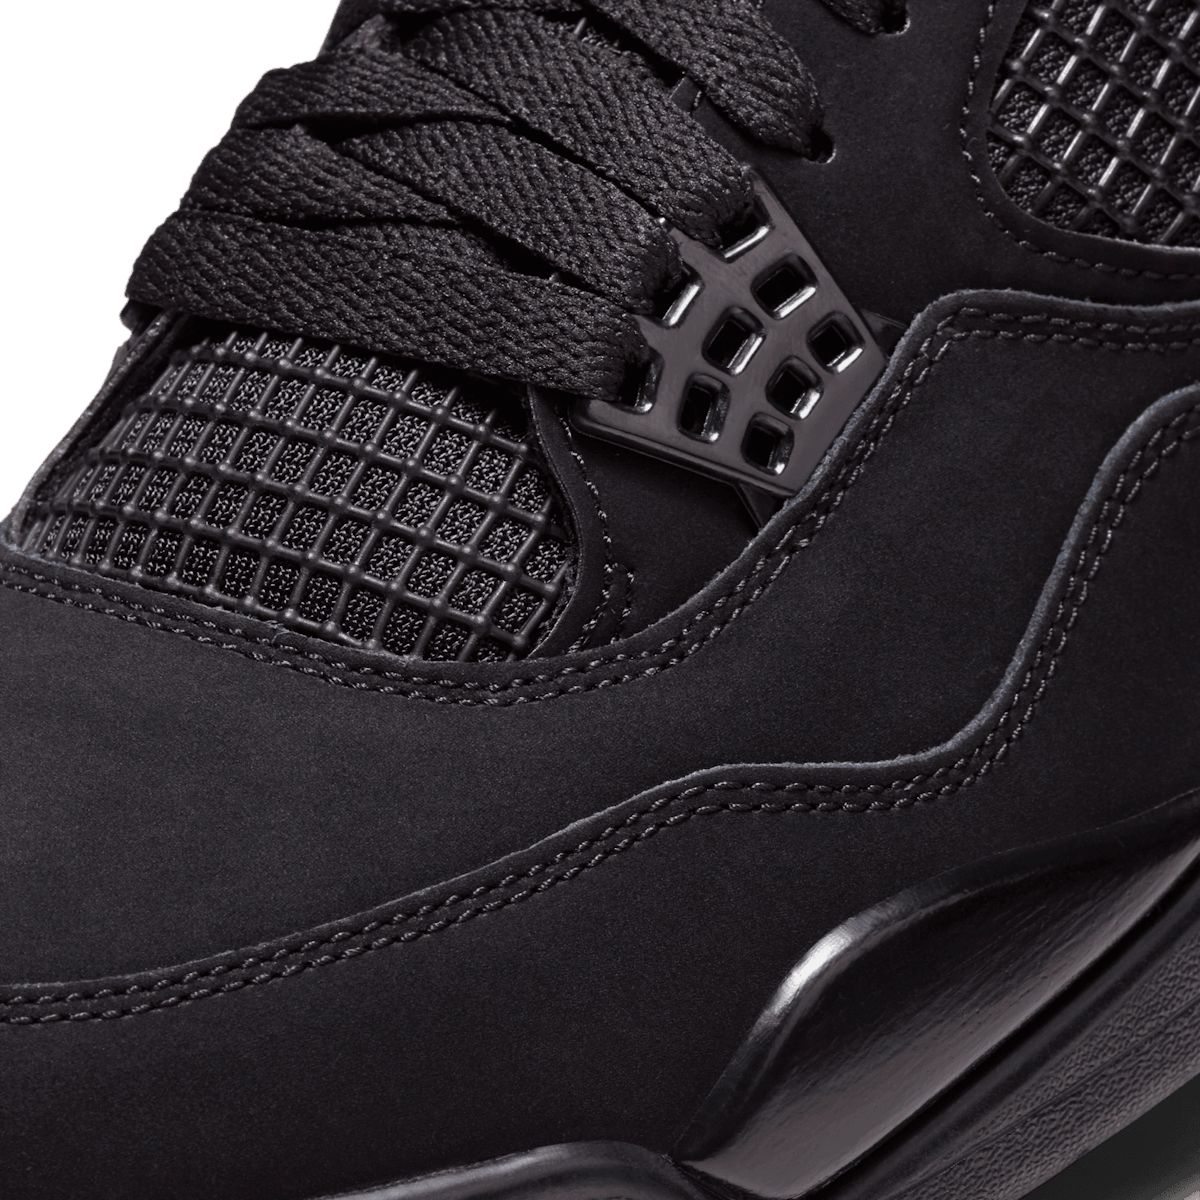 Buy Air Jordan 4 Retro TD 'Black Cat' 2020 - BQ7670 010